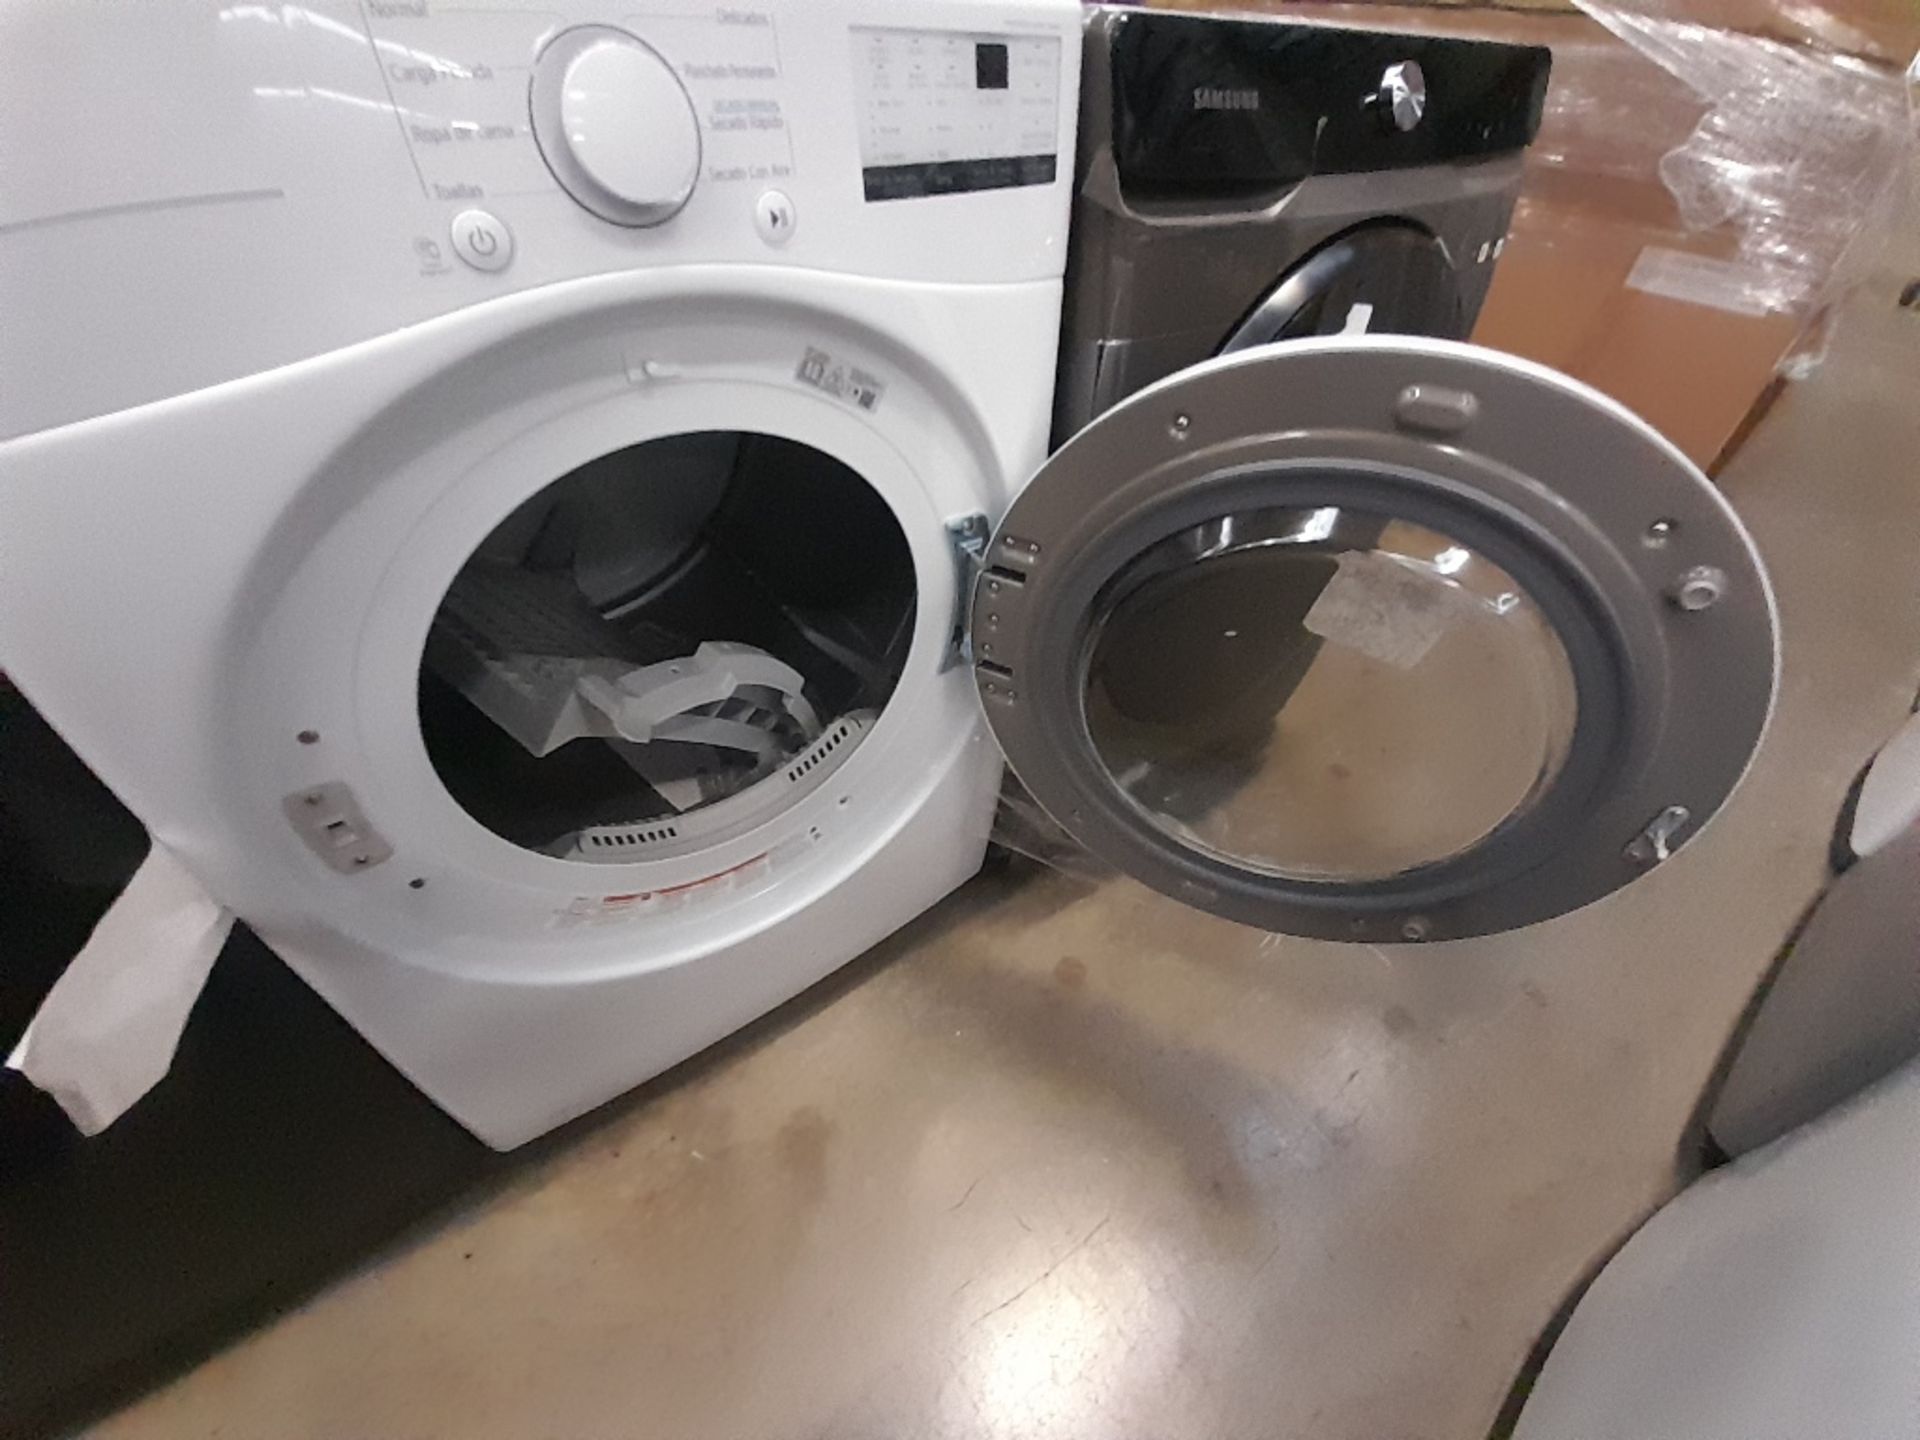 Lote de 1 lavadora y 1 Secadora contiene: 1 lavadora de 20 KG, Marca SAMSUNG, Modelo WD20T6300GP, S - Image 5 of 7